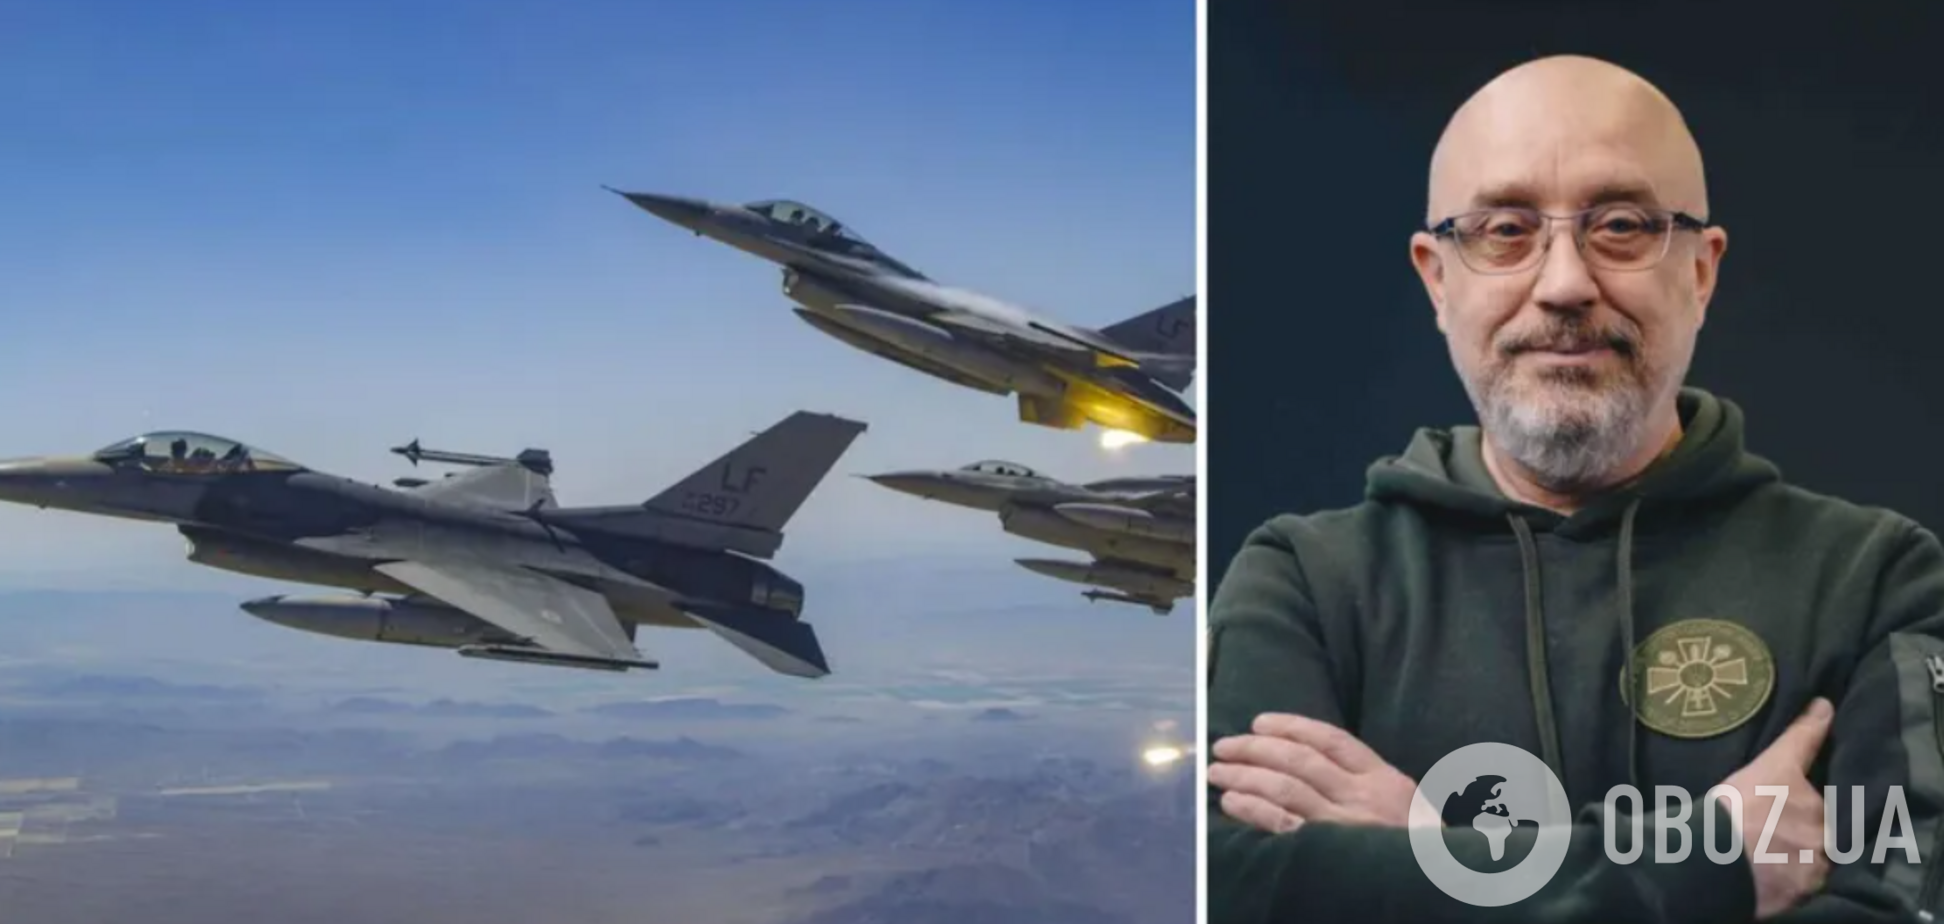 Учения украинских пилотов на F-16 начались, – Резников